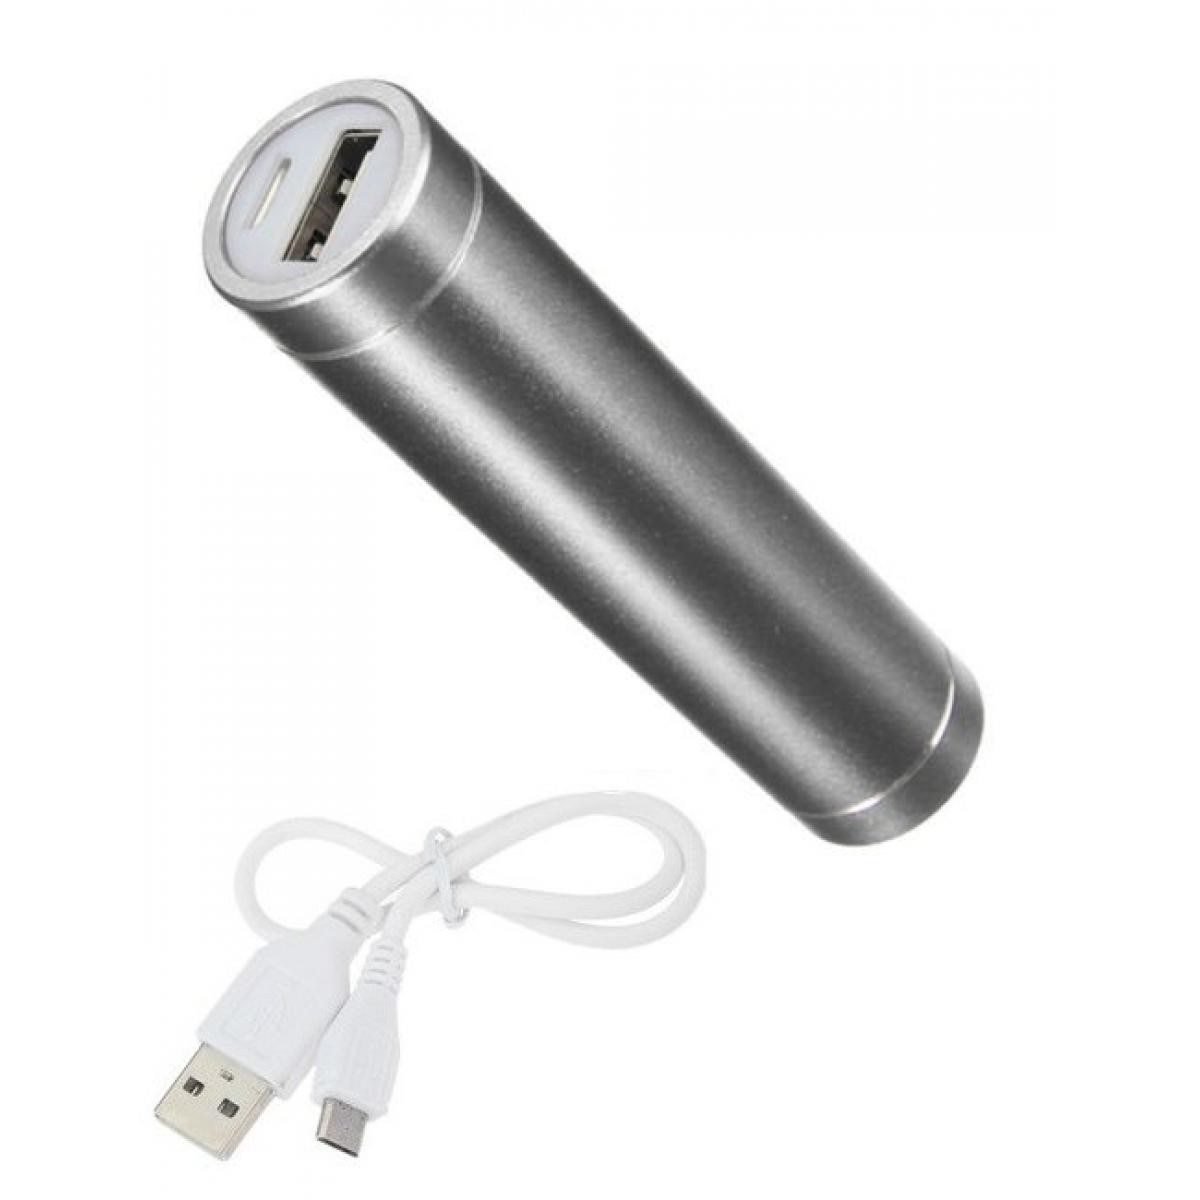 Shot - Batterie Chargeur Externe pour HUAWEI P30 Power Bank 2600mAh avec Cable USB/Mirco USB Secours Telephone (ARGENT) - Chargeur secteur téléphone